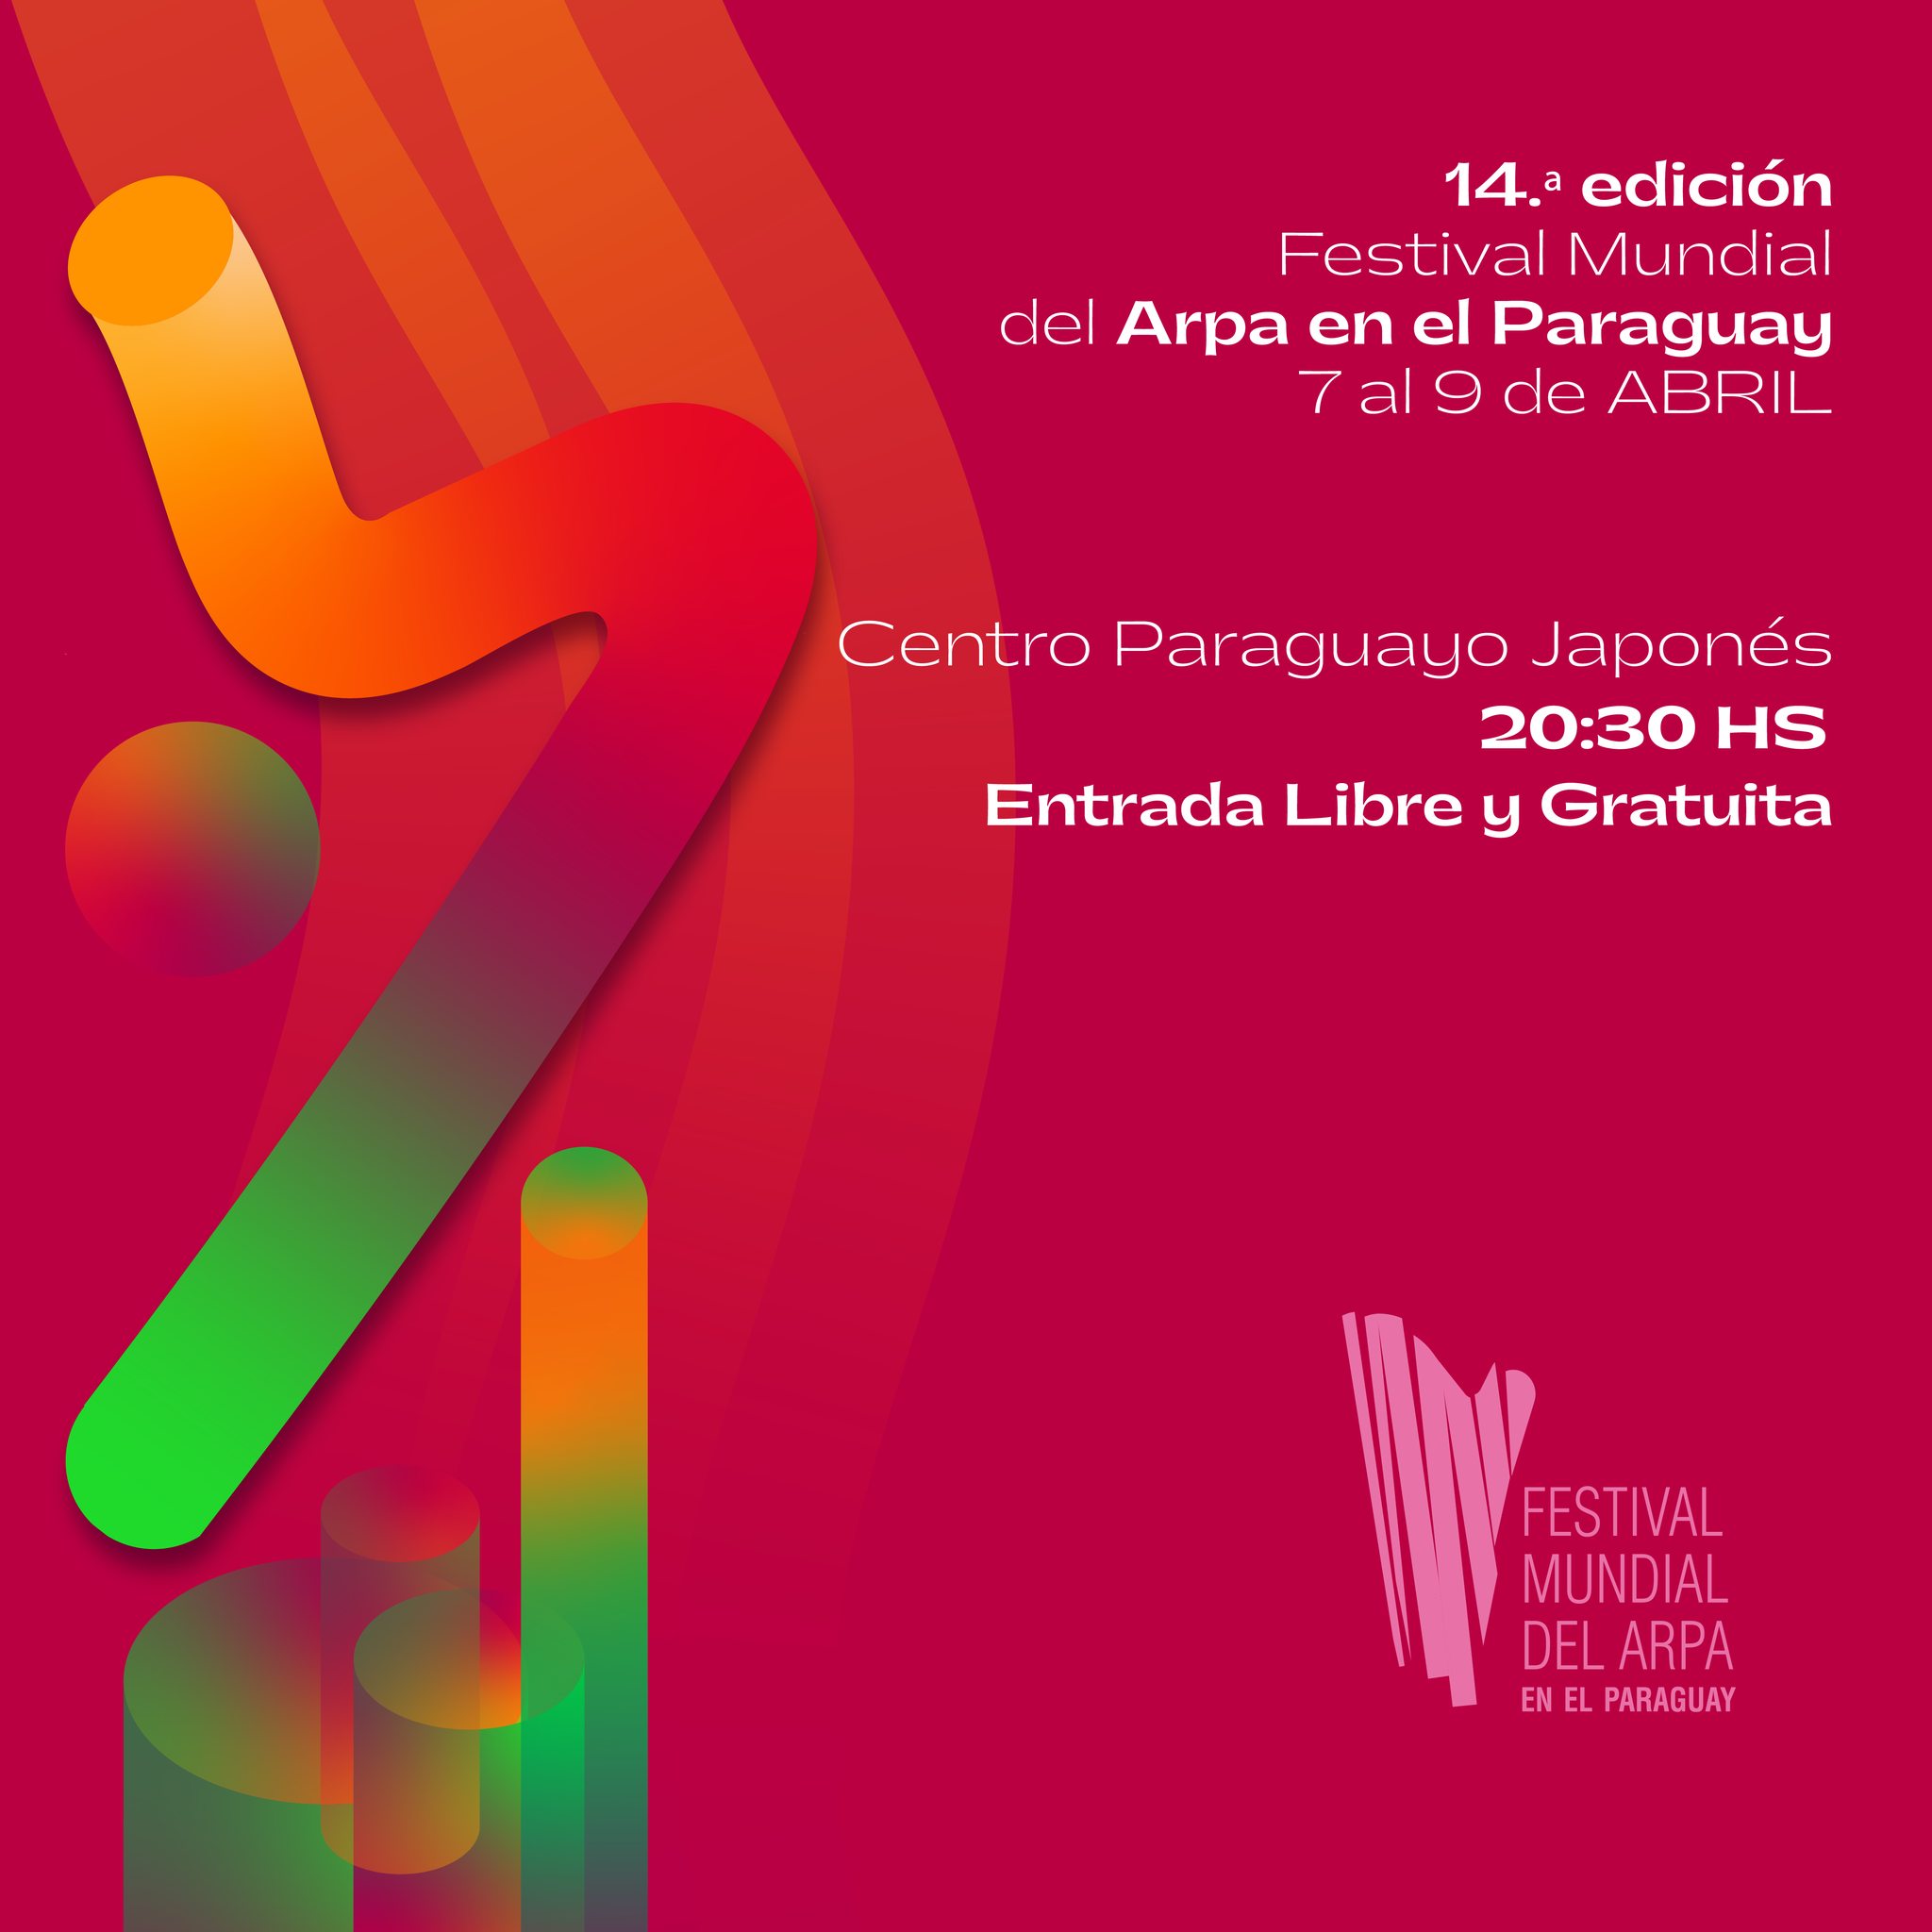 14° edición del Festival Mundial del Arpa en Paraguay